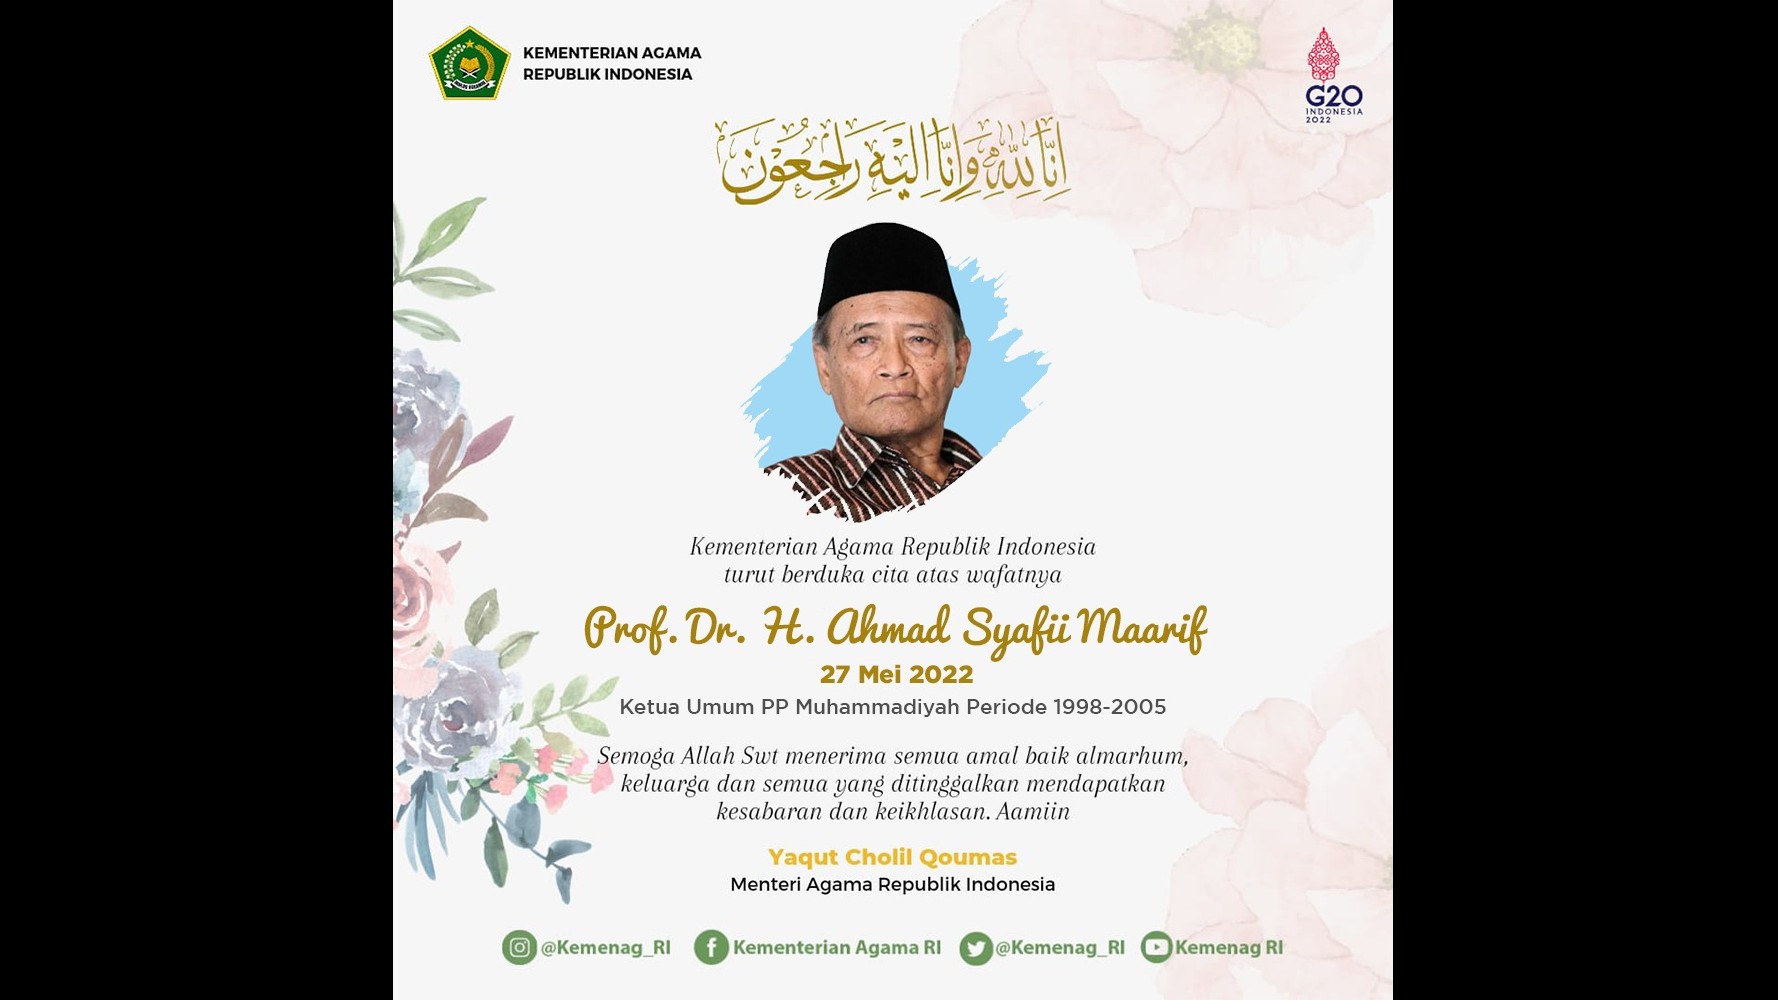 Kementerian Agama turut berduka cita atas wafatnya Prof. Dr. H. Ahmad Syafii Maarif.